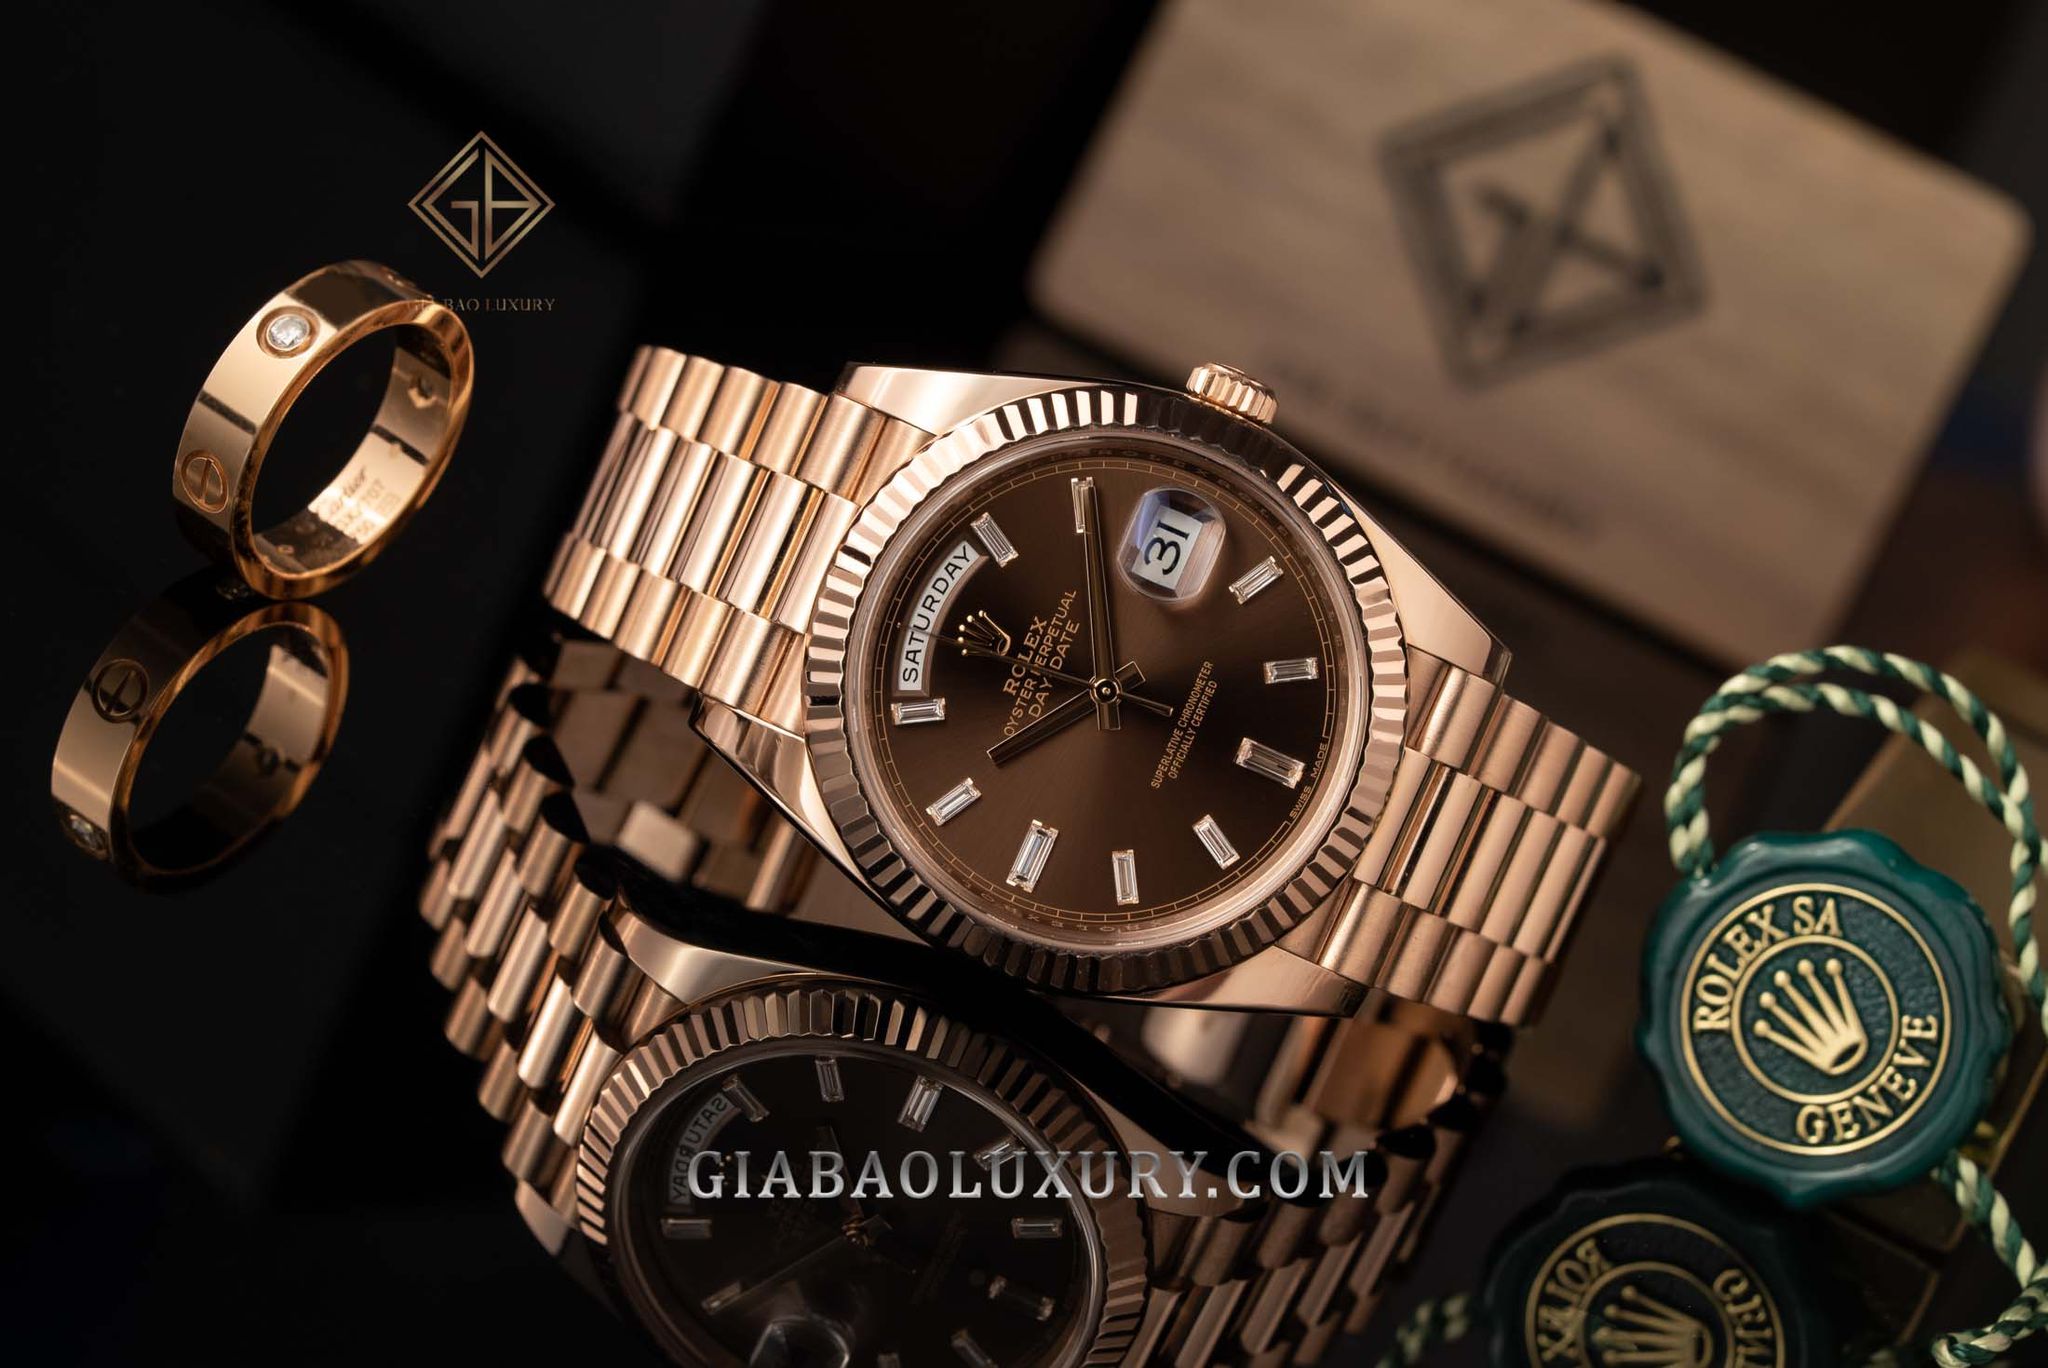 Thu mua đồng hồ Rolex Day-Date chính hãng tại Gia Bảo Luxury